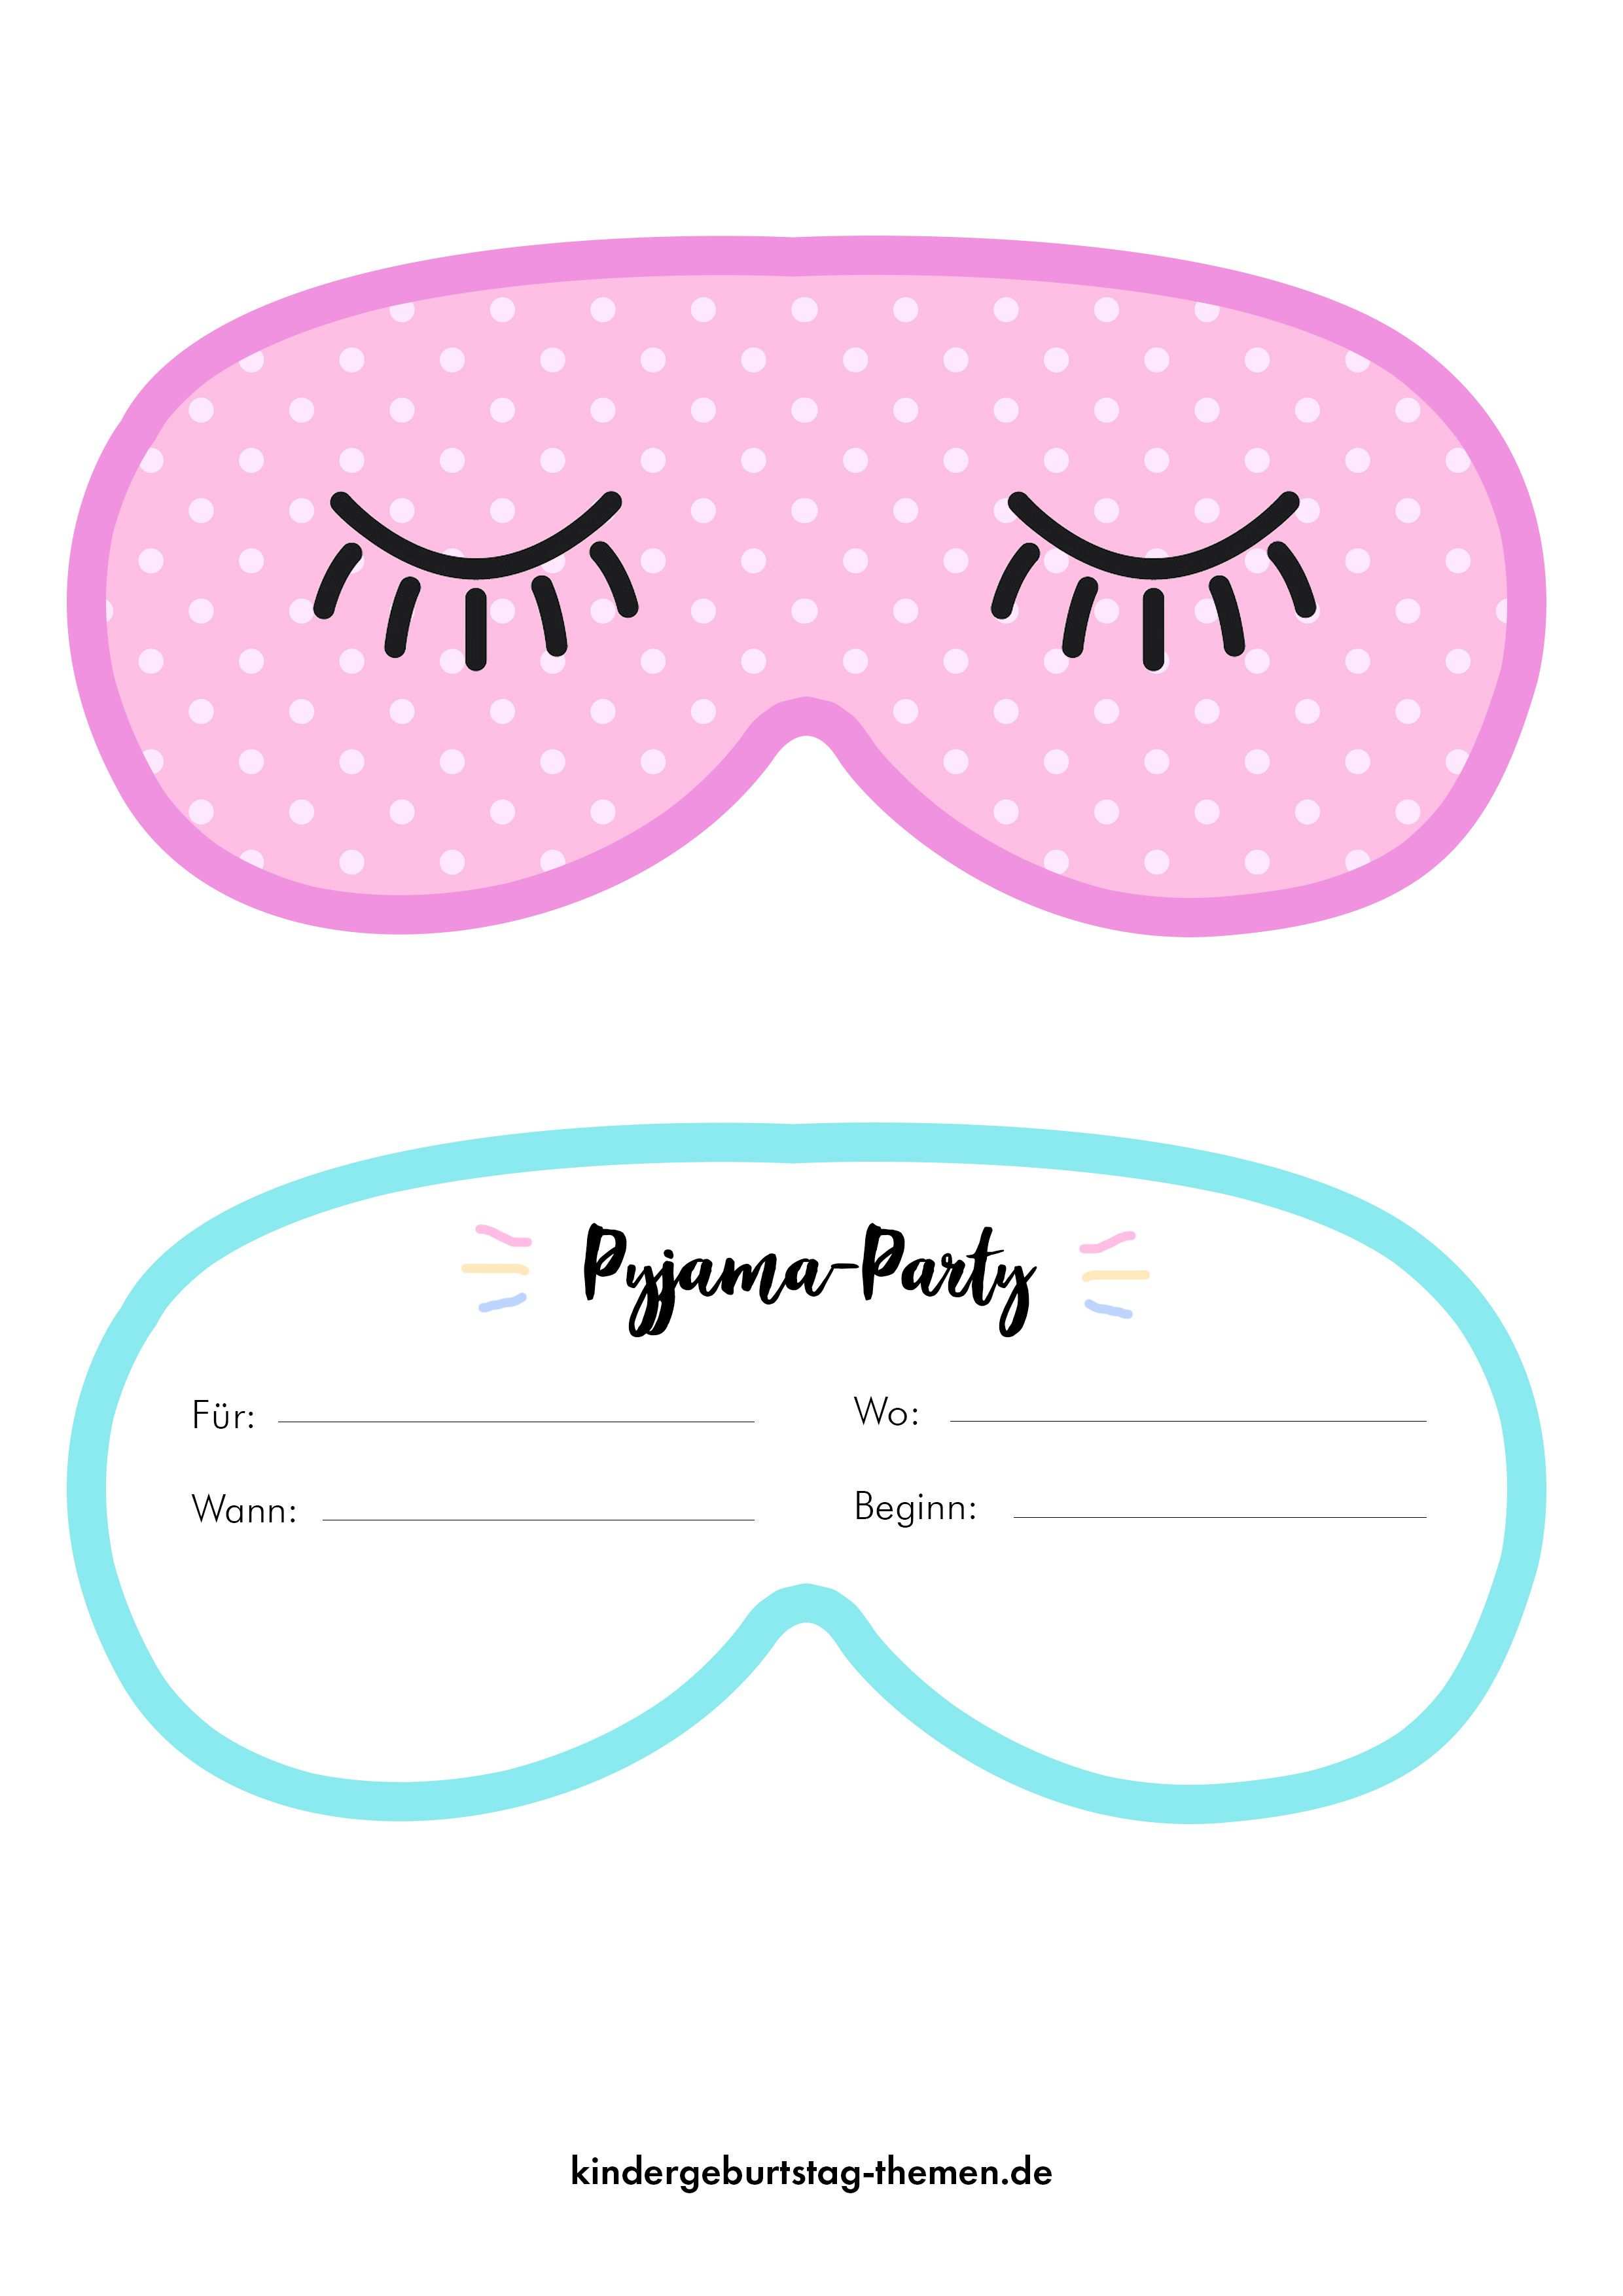 Pyjama Party Einladung Kreative Einladungskarten In Pdf Druckvorlagen Und Jpg Pyjamaparty Party Einladung Kreative Einladungskarten